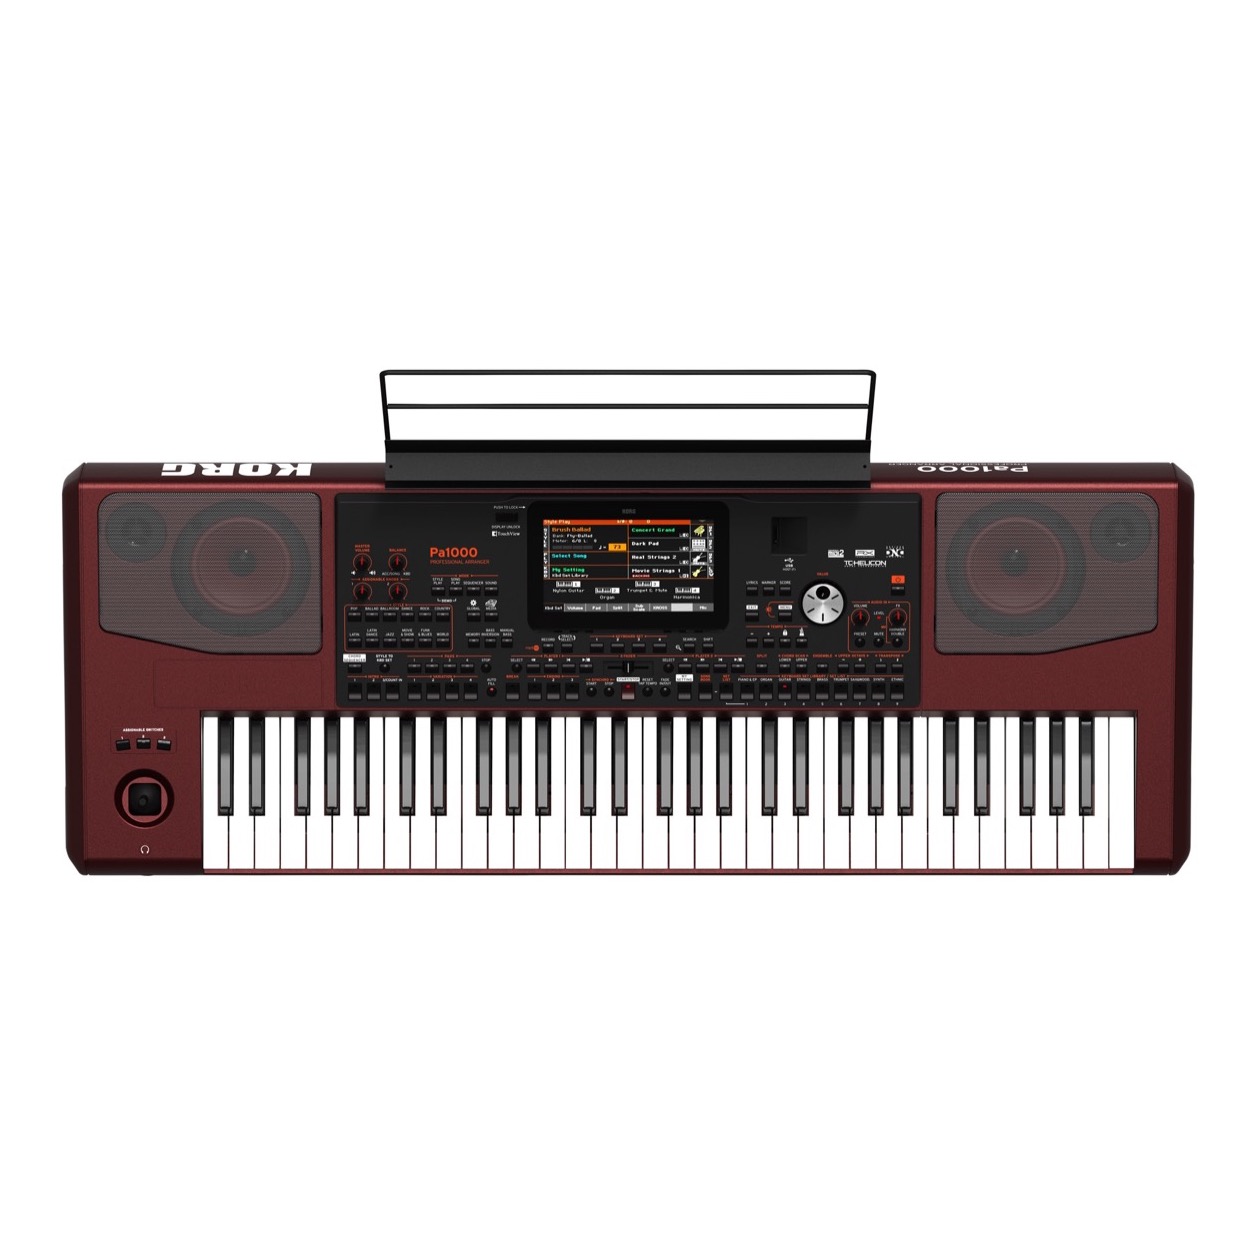 Korg PA 1000 / PA1000 Professional Arranger Entertainer Keyboard, 61 toetsen, 2 x 33 Watt, VOORLOPIG NIET LEVERBAAR, NIEUW IN DOOS !